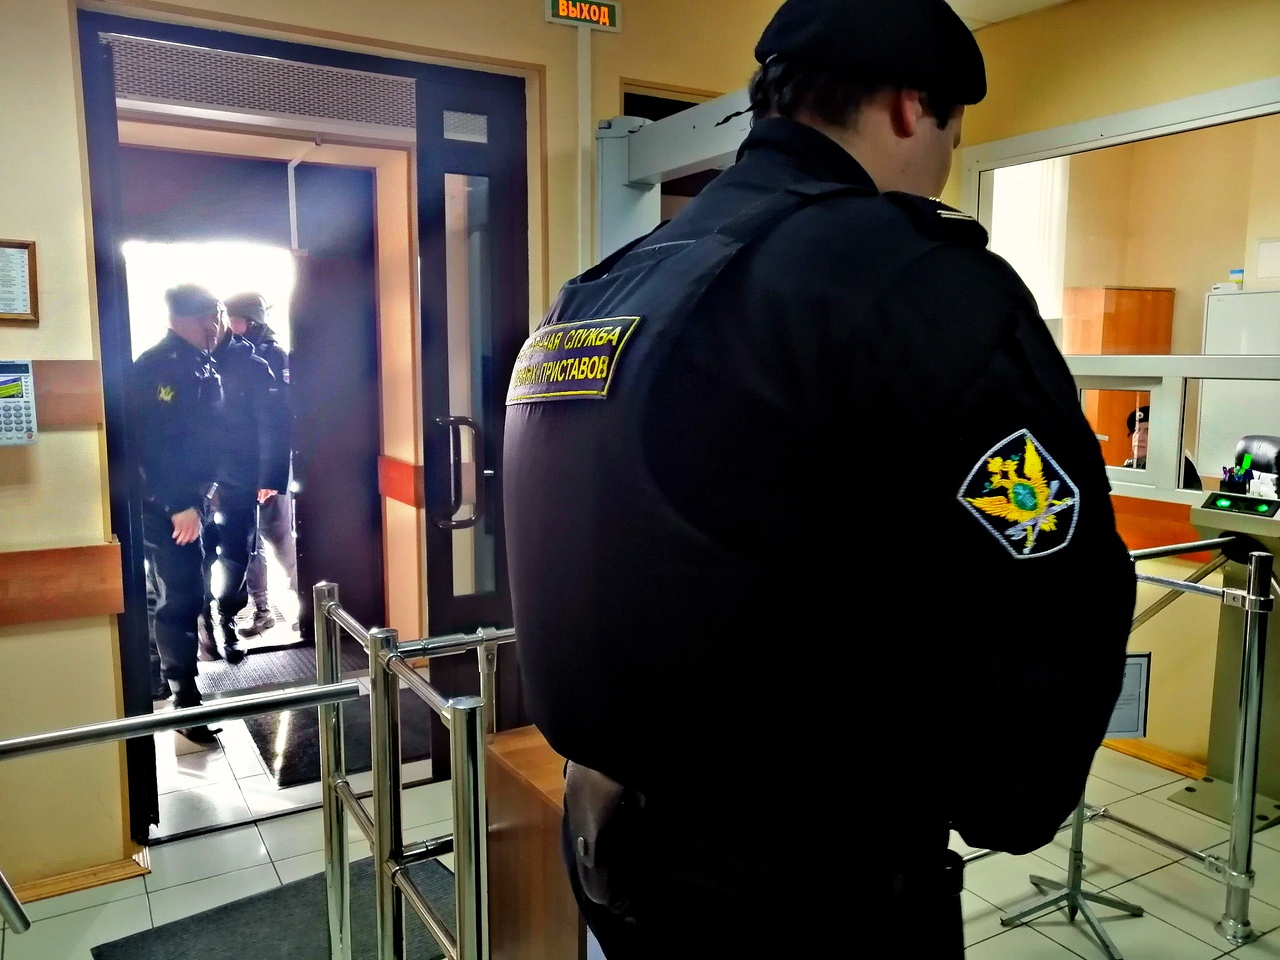 "Хоть в декрет, хоть в тюрьму": родители в Ярославле "зажали" детям миллион рублей